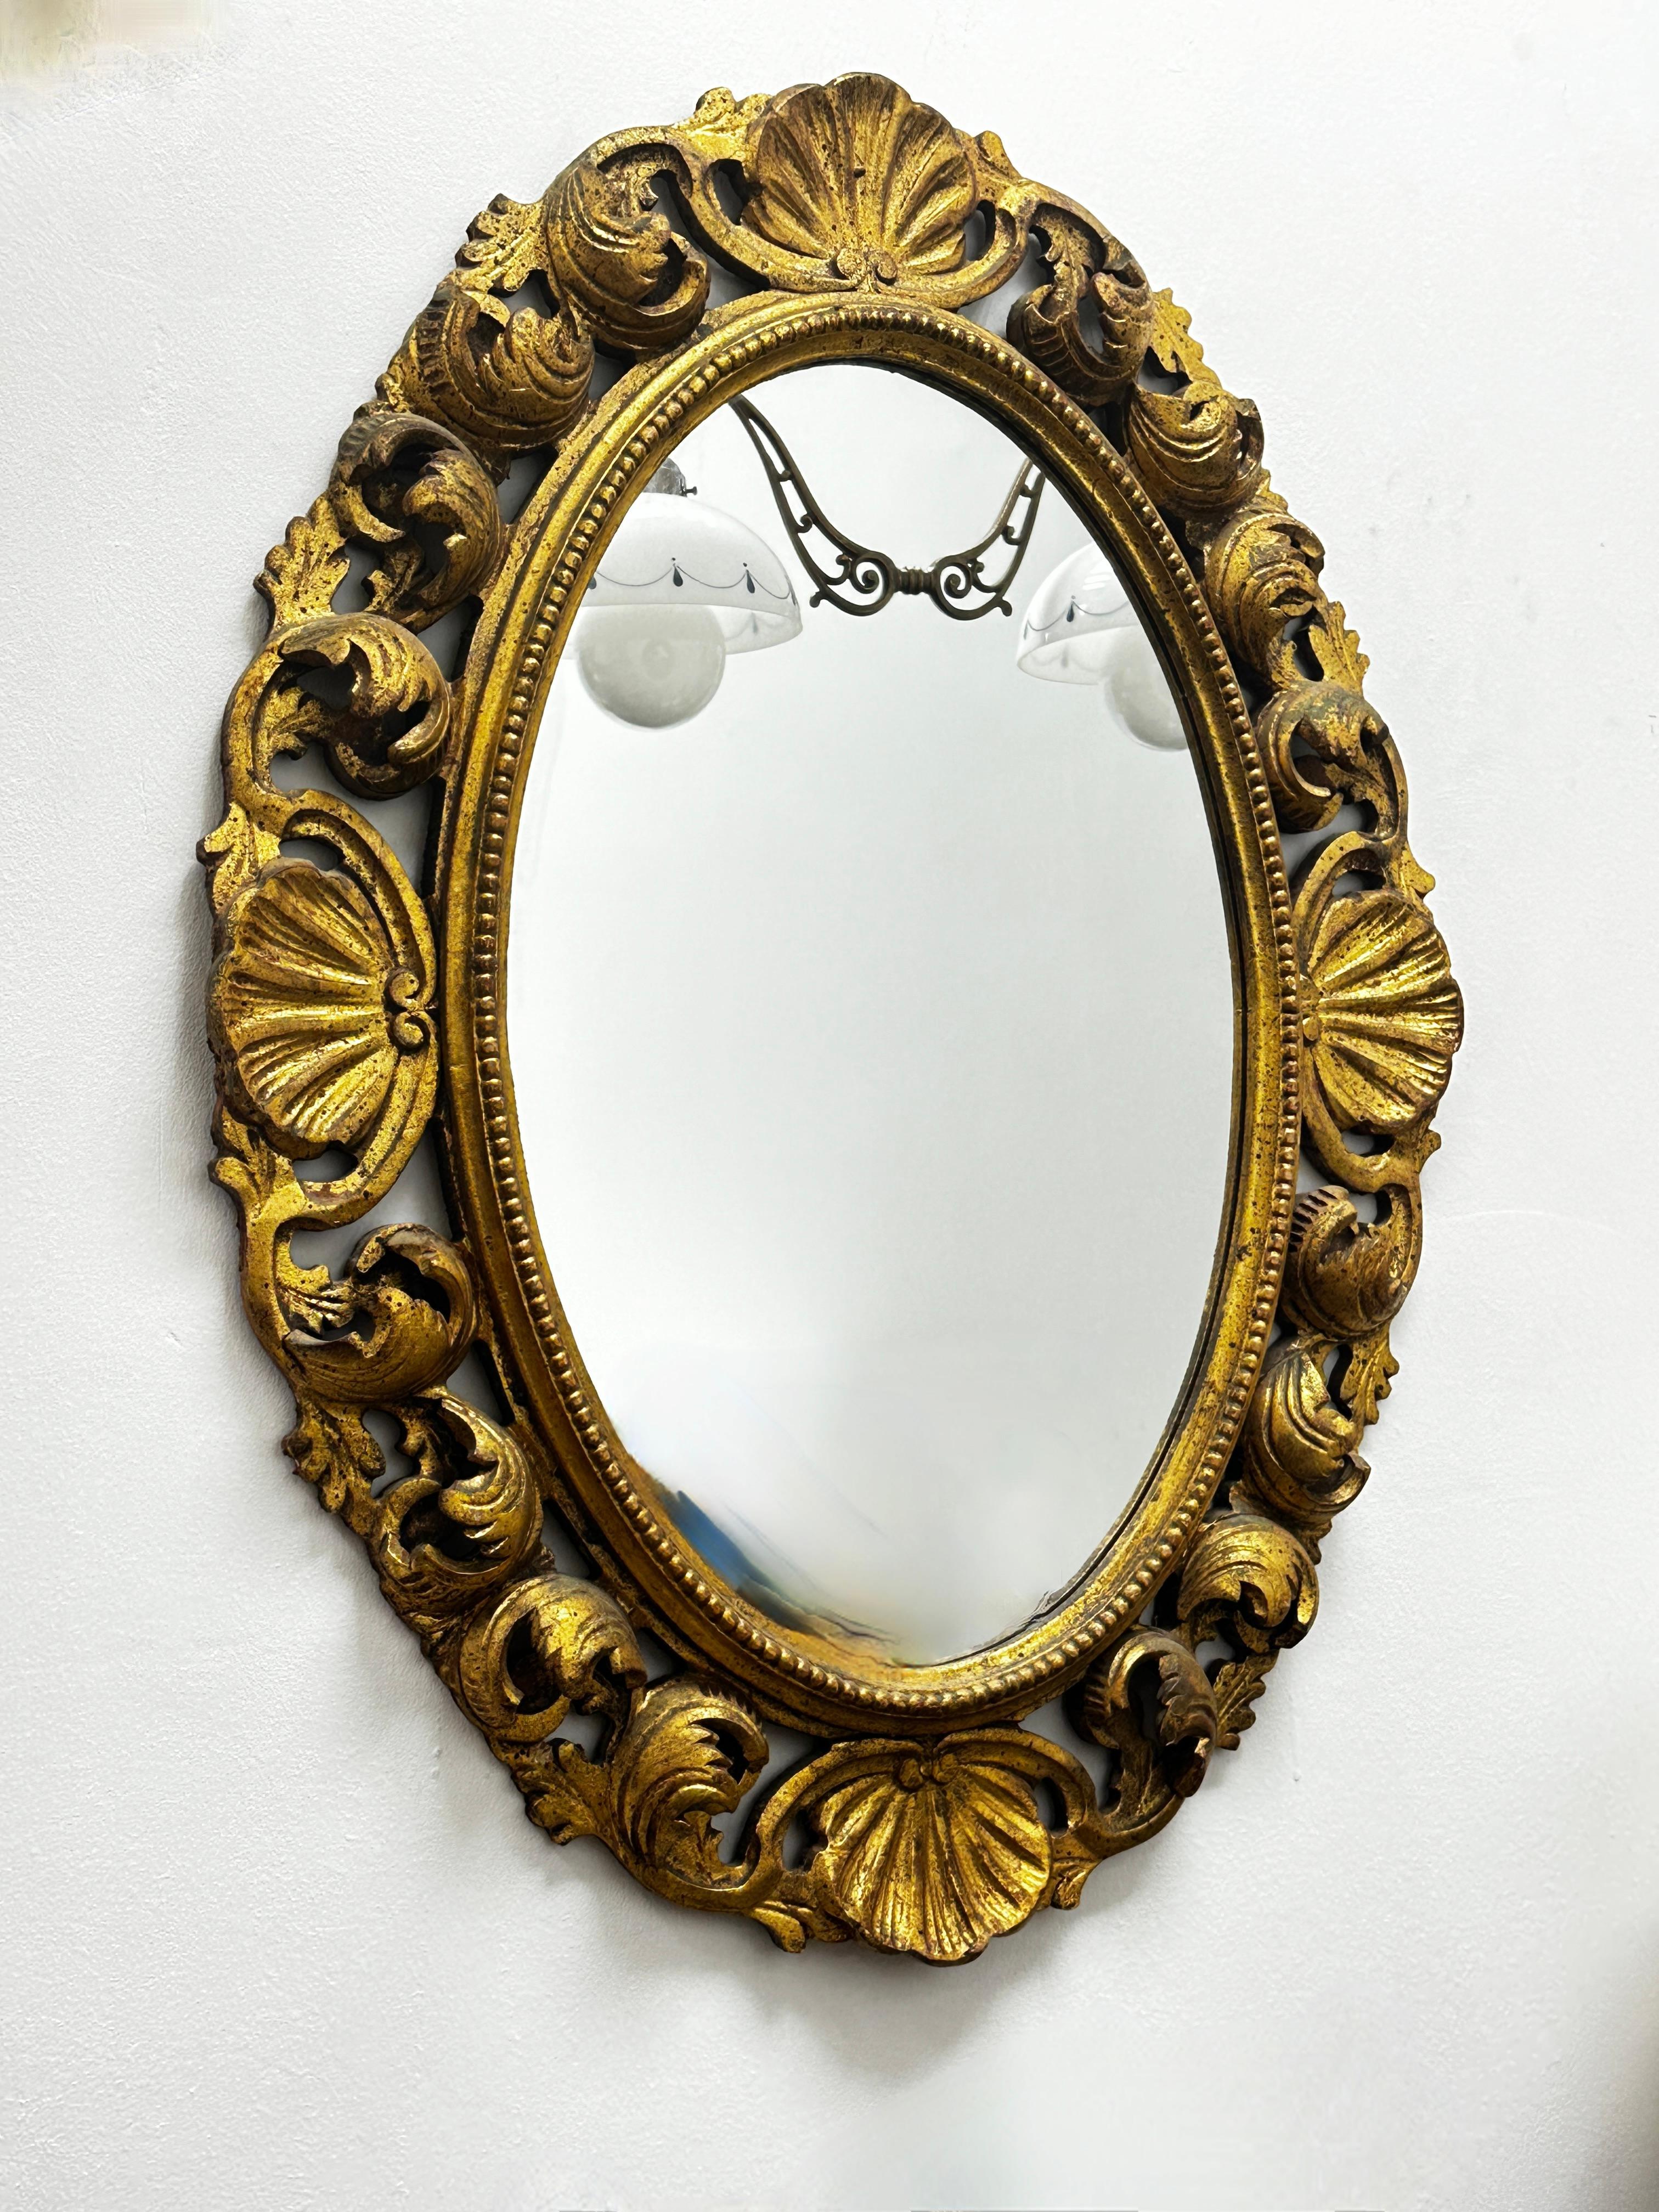 Superbe miroir en faïence de style Hollywood Regency. Le cadre en bois sculpté à la main et doré entoure un miroir en verre. La partie visible du miroir lui-même mesure environ 21,5 pouces de haut et 14,13 pouces de large. Fabriqué en France, dans